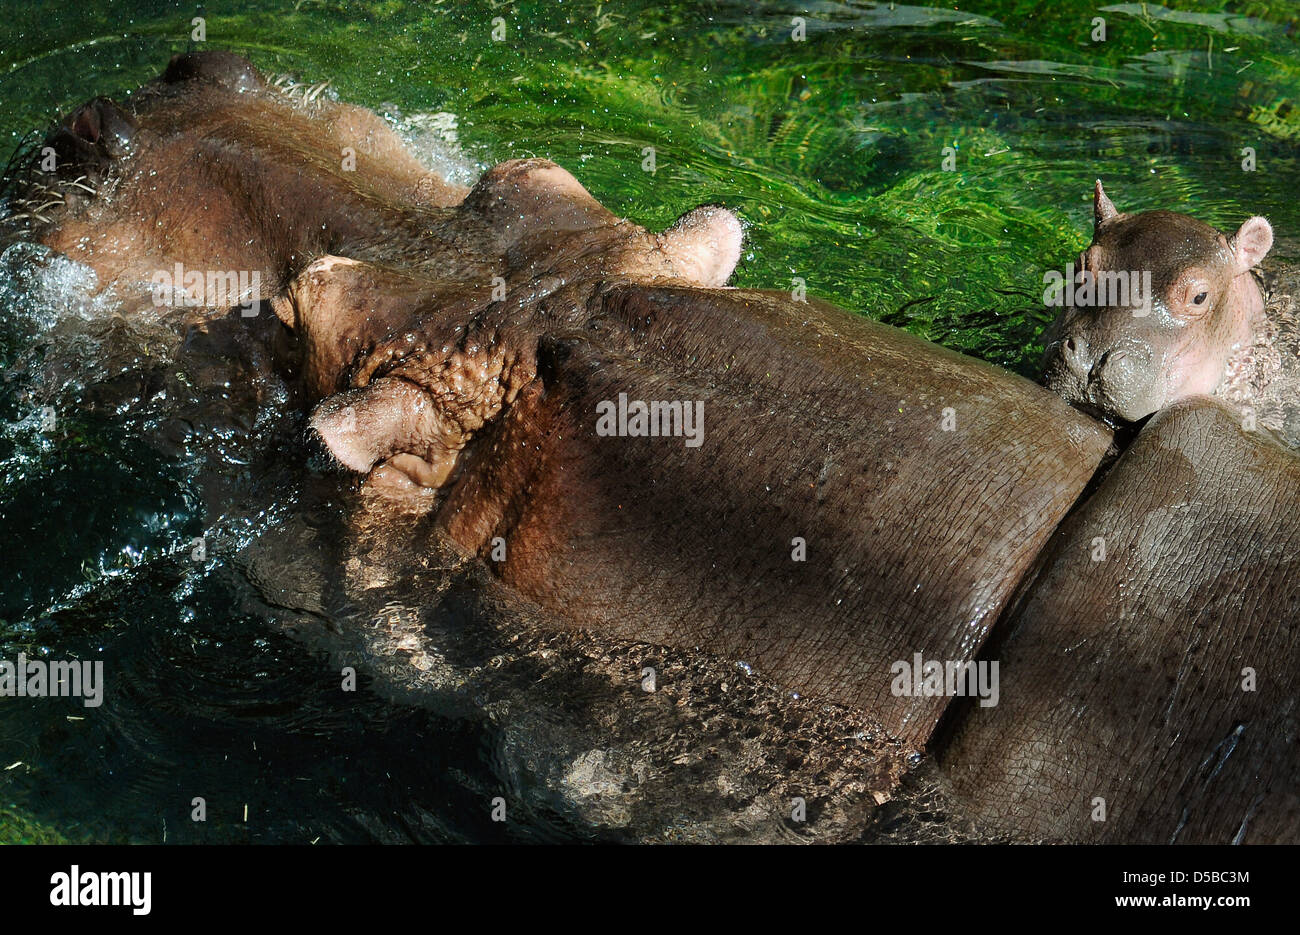 L'ancora senza nome neonato ippopotamo e sua madre Kathi resto in acqua dello Zoo di Berlino in Germania, 24 agosto 2010. Il bambino Ippona era nato il 09 agosto 2010. Foto: Hannibal Hanschke Foto Stock